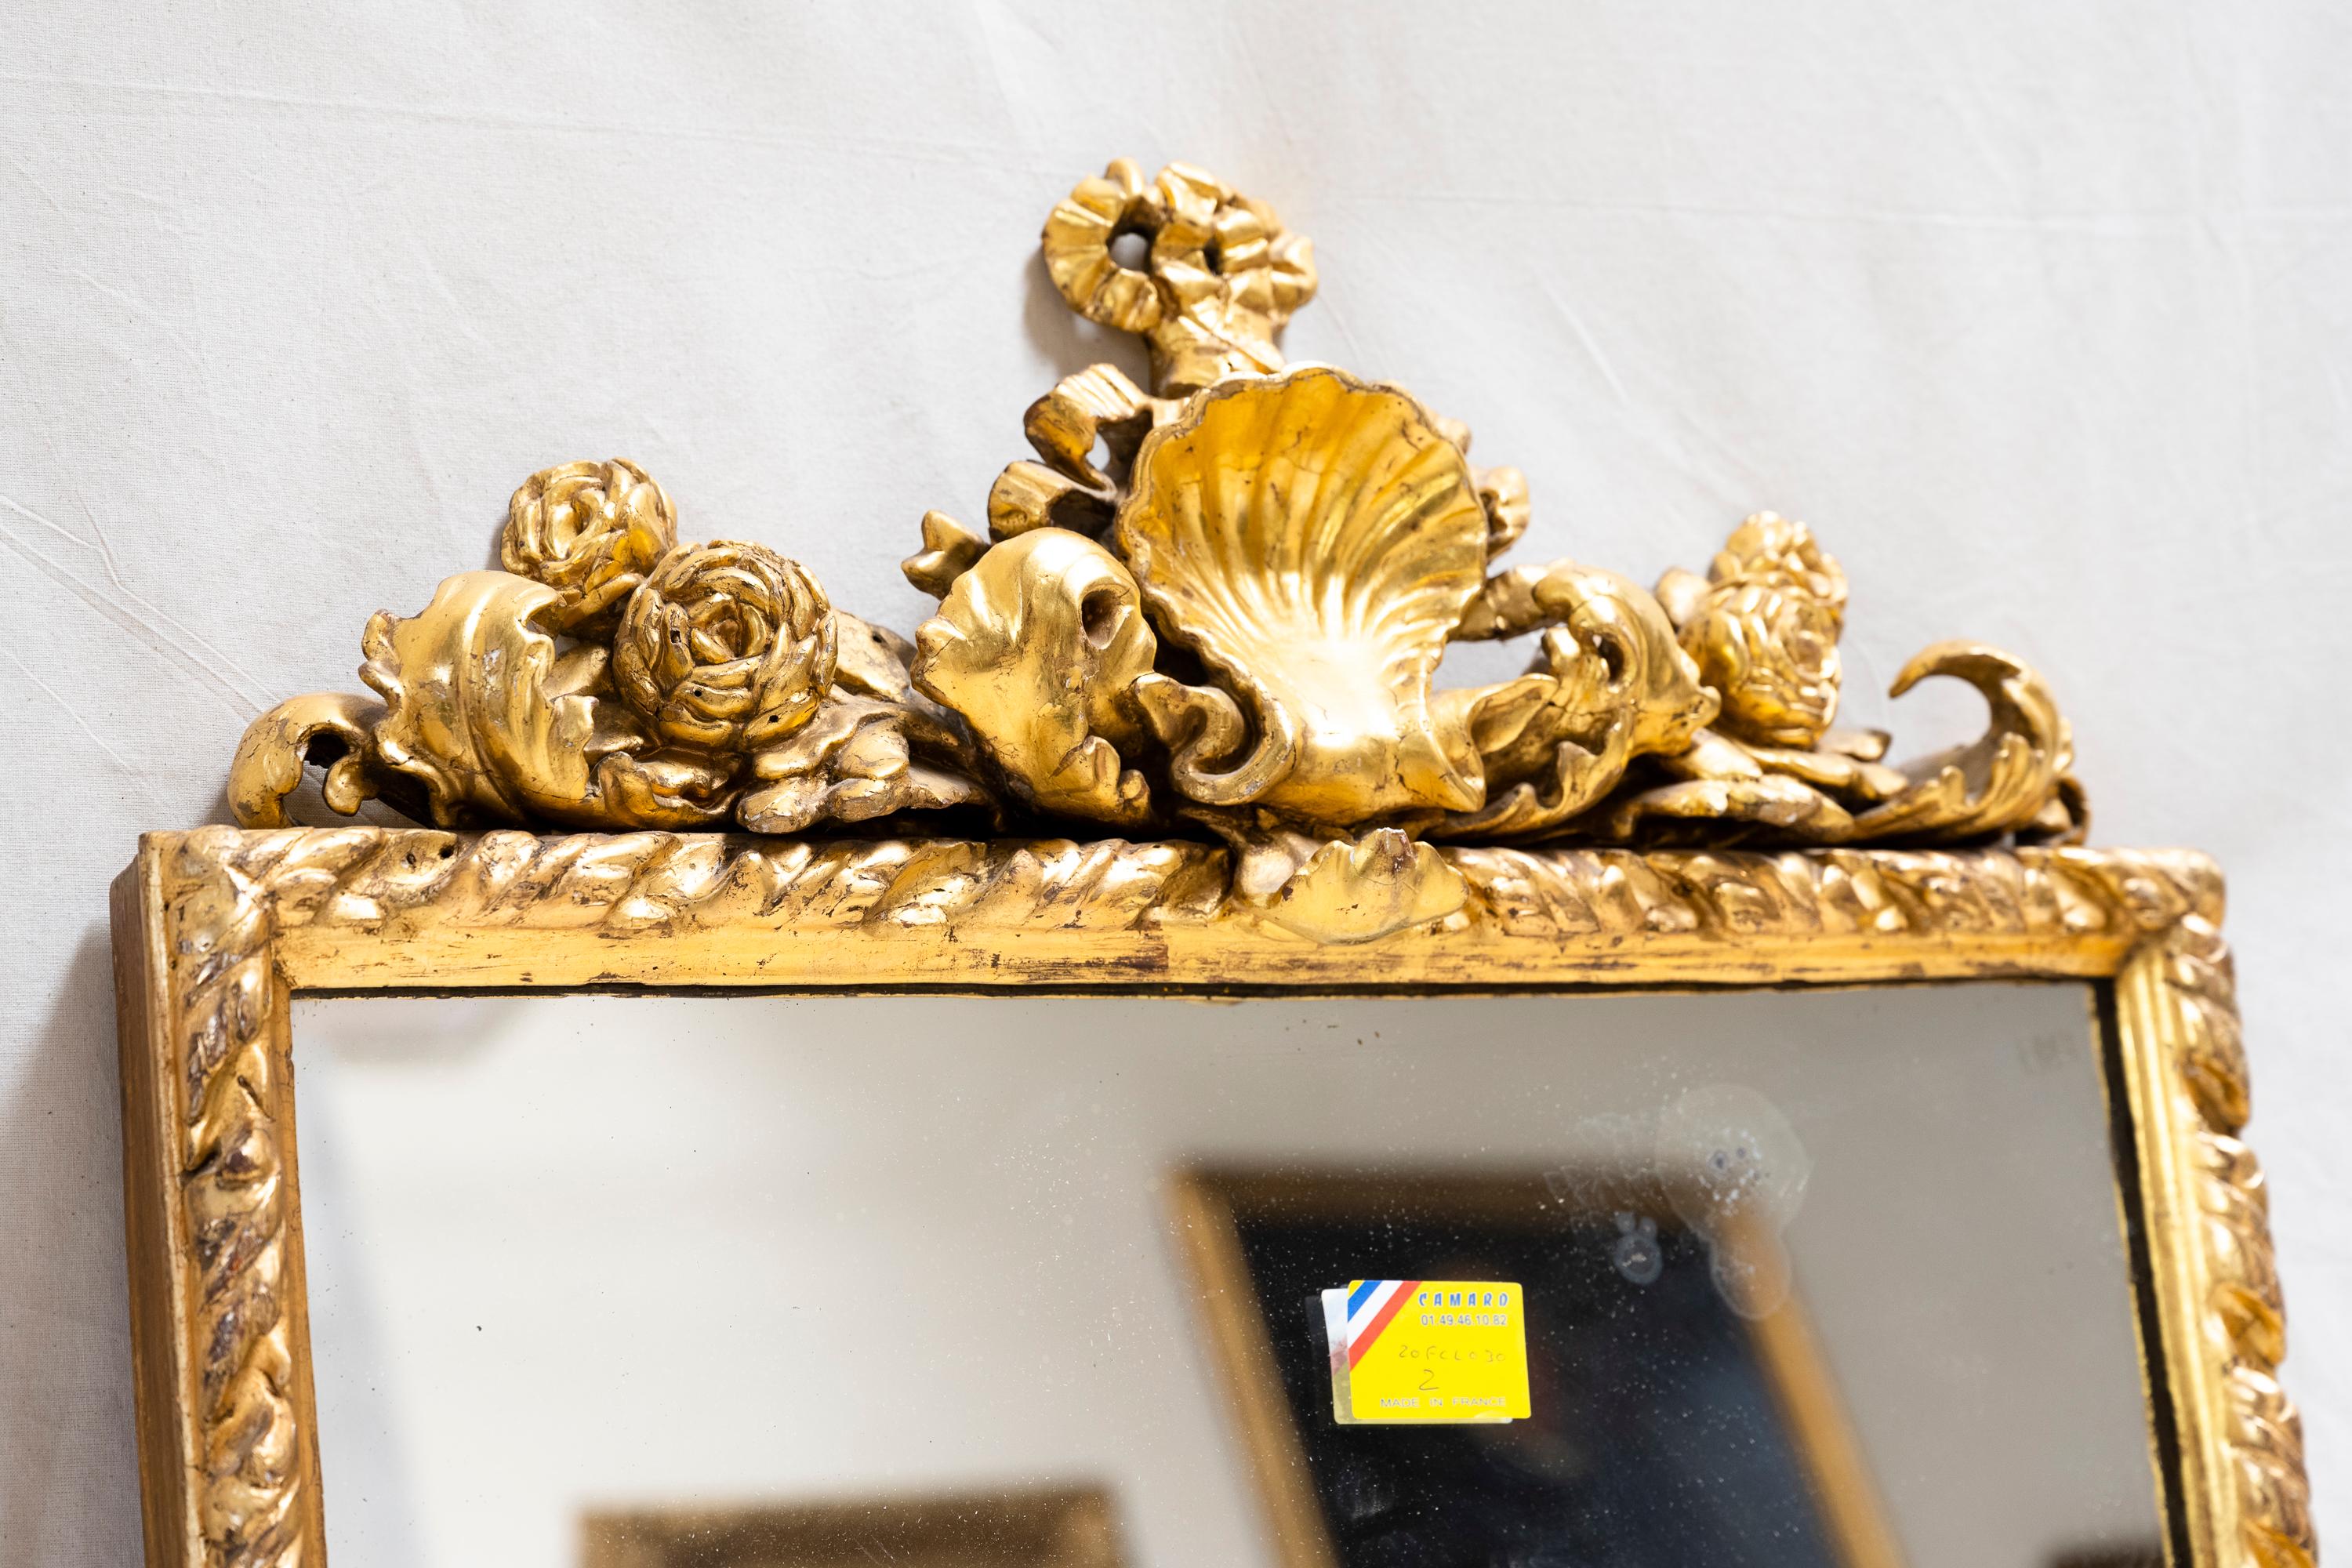 Miroir italien en bois doré (c. 1880). Orné de camélias, de feuilles d'acanthe et de la crête d'une grande coquille, ce miroir était suspendu dans le salon d'un glorieux château. 

Provenance : Un château près d'Albi, France.